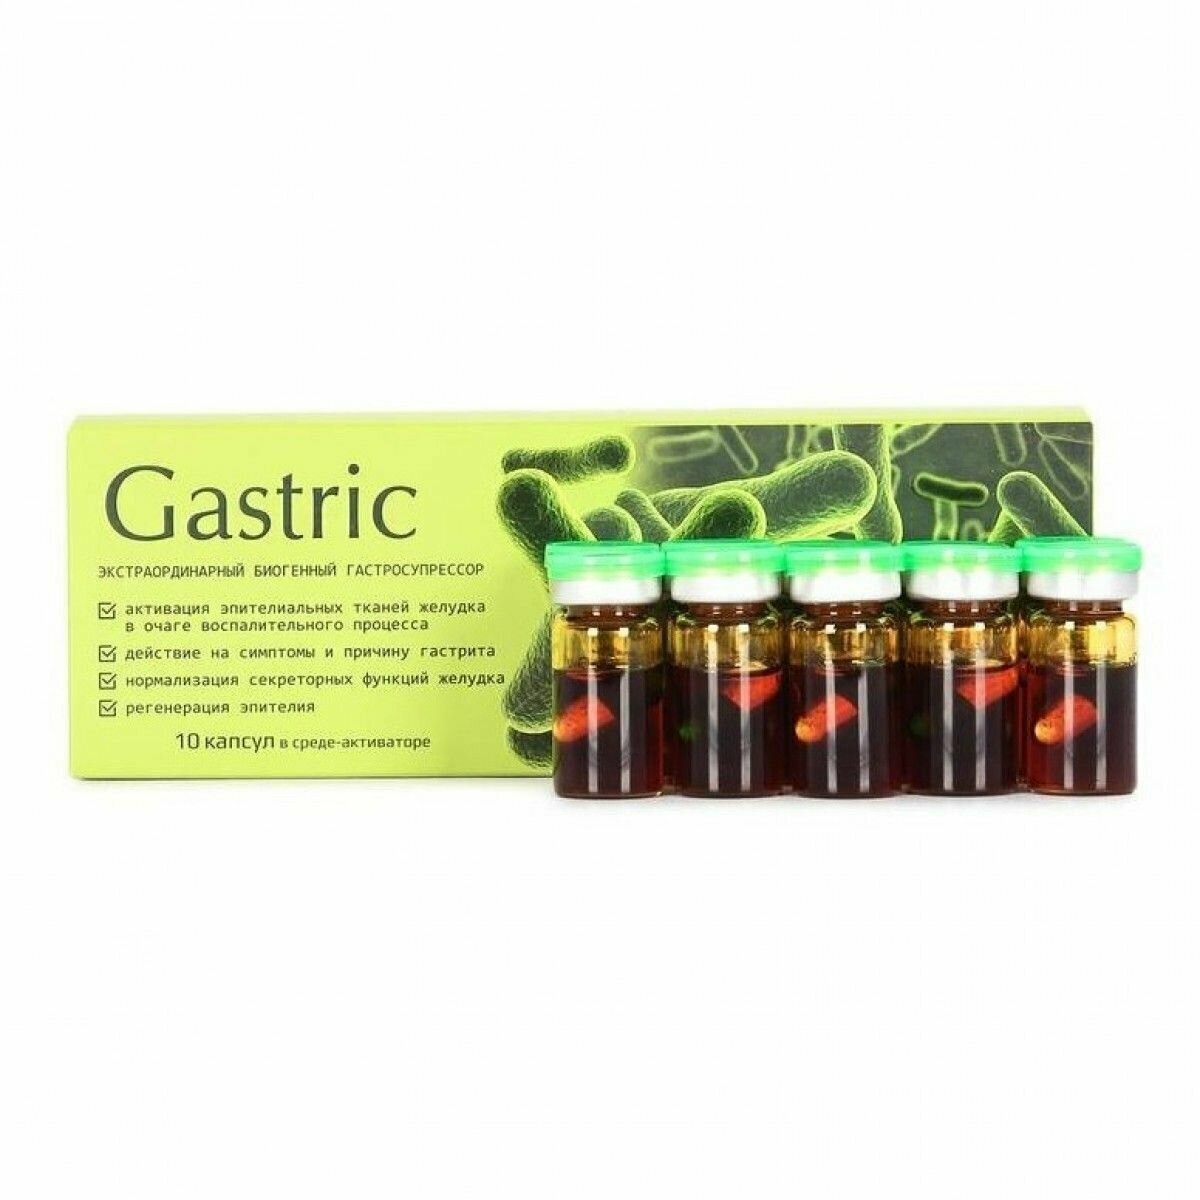 Gastric (Гастрик) KapsOila - пищевая добавка для желудка, капсулы 10 шт. При гастрите и язве, нарушении микрофлоры и грибке. омега-3, омега-6 жирные кислоты. Сашера-МЕД.